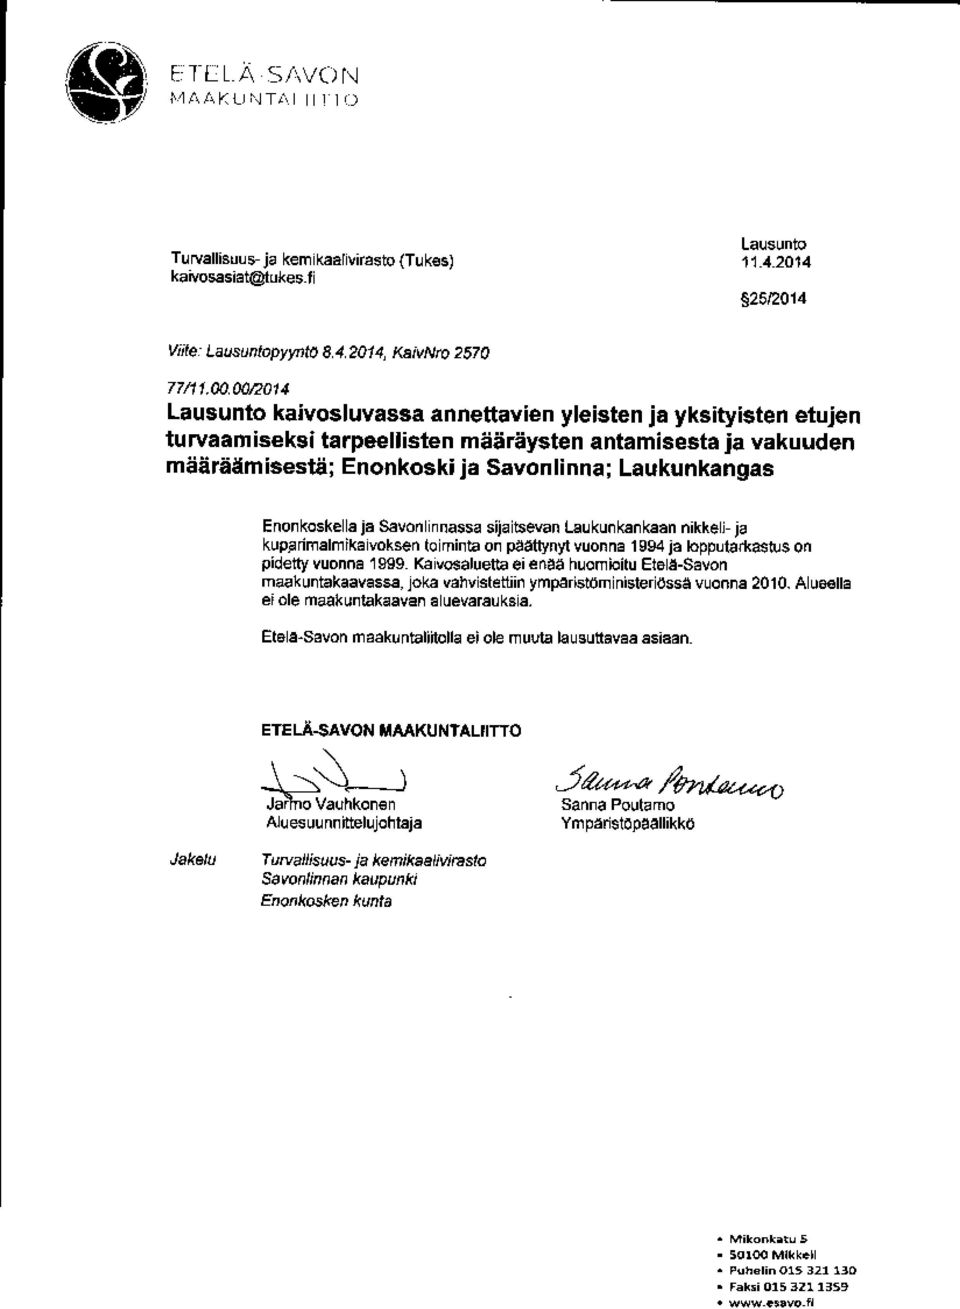 ja Savonlinnassa sijaitsevan Laukunkankaan nikkeli-ja kupanmalmikaivoksen toiminta on 11eettinyl vu onna 1994 ja loppuwmasw5 on pidetty vu na 1999.